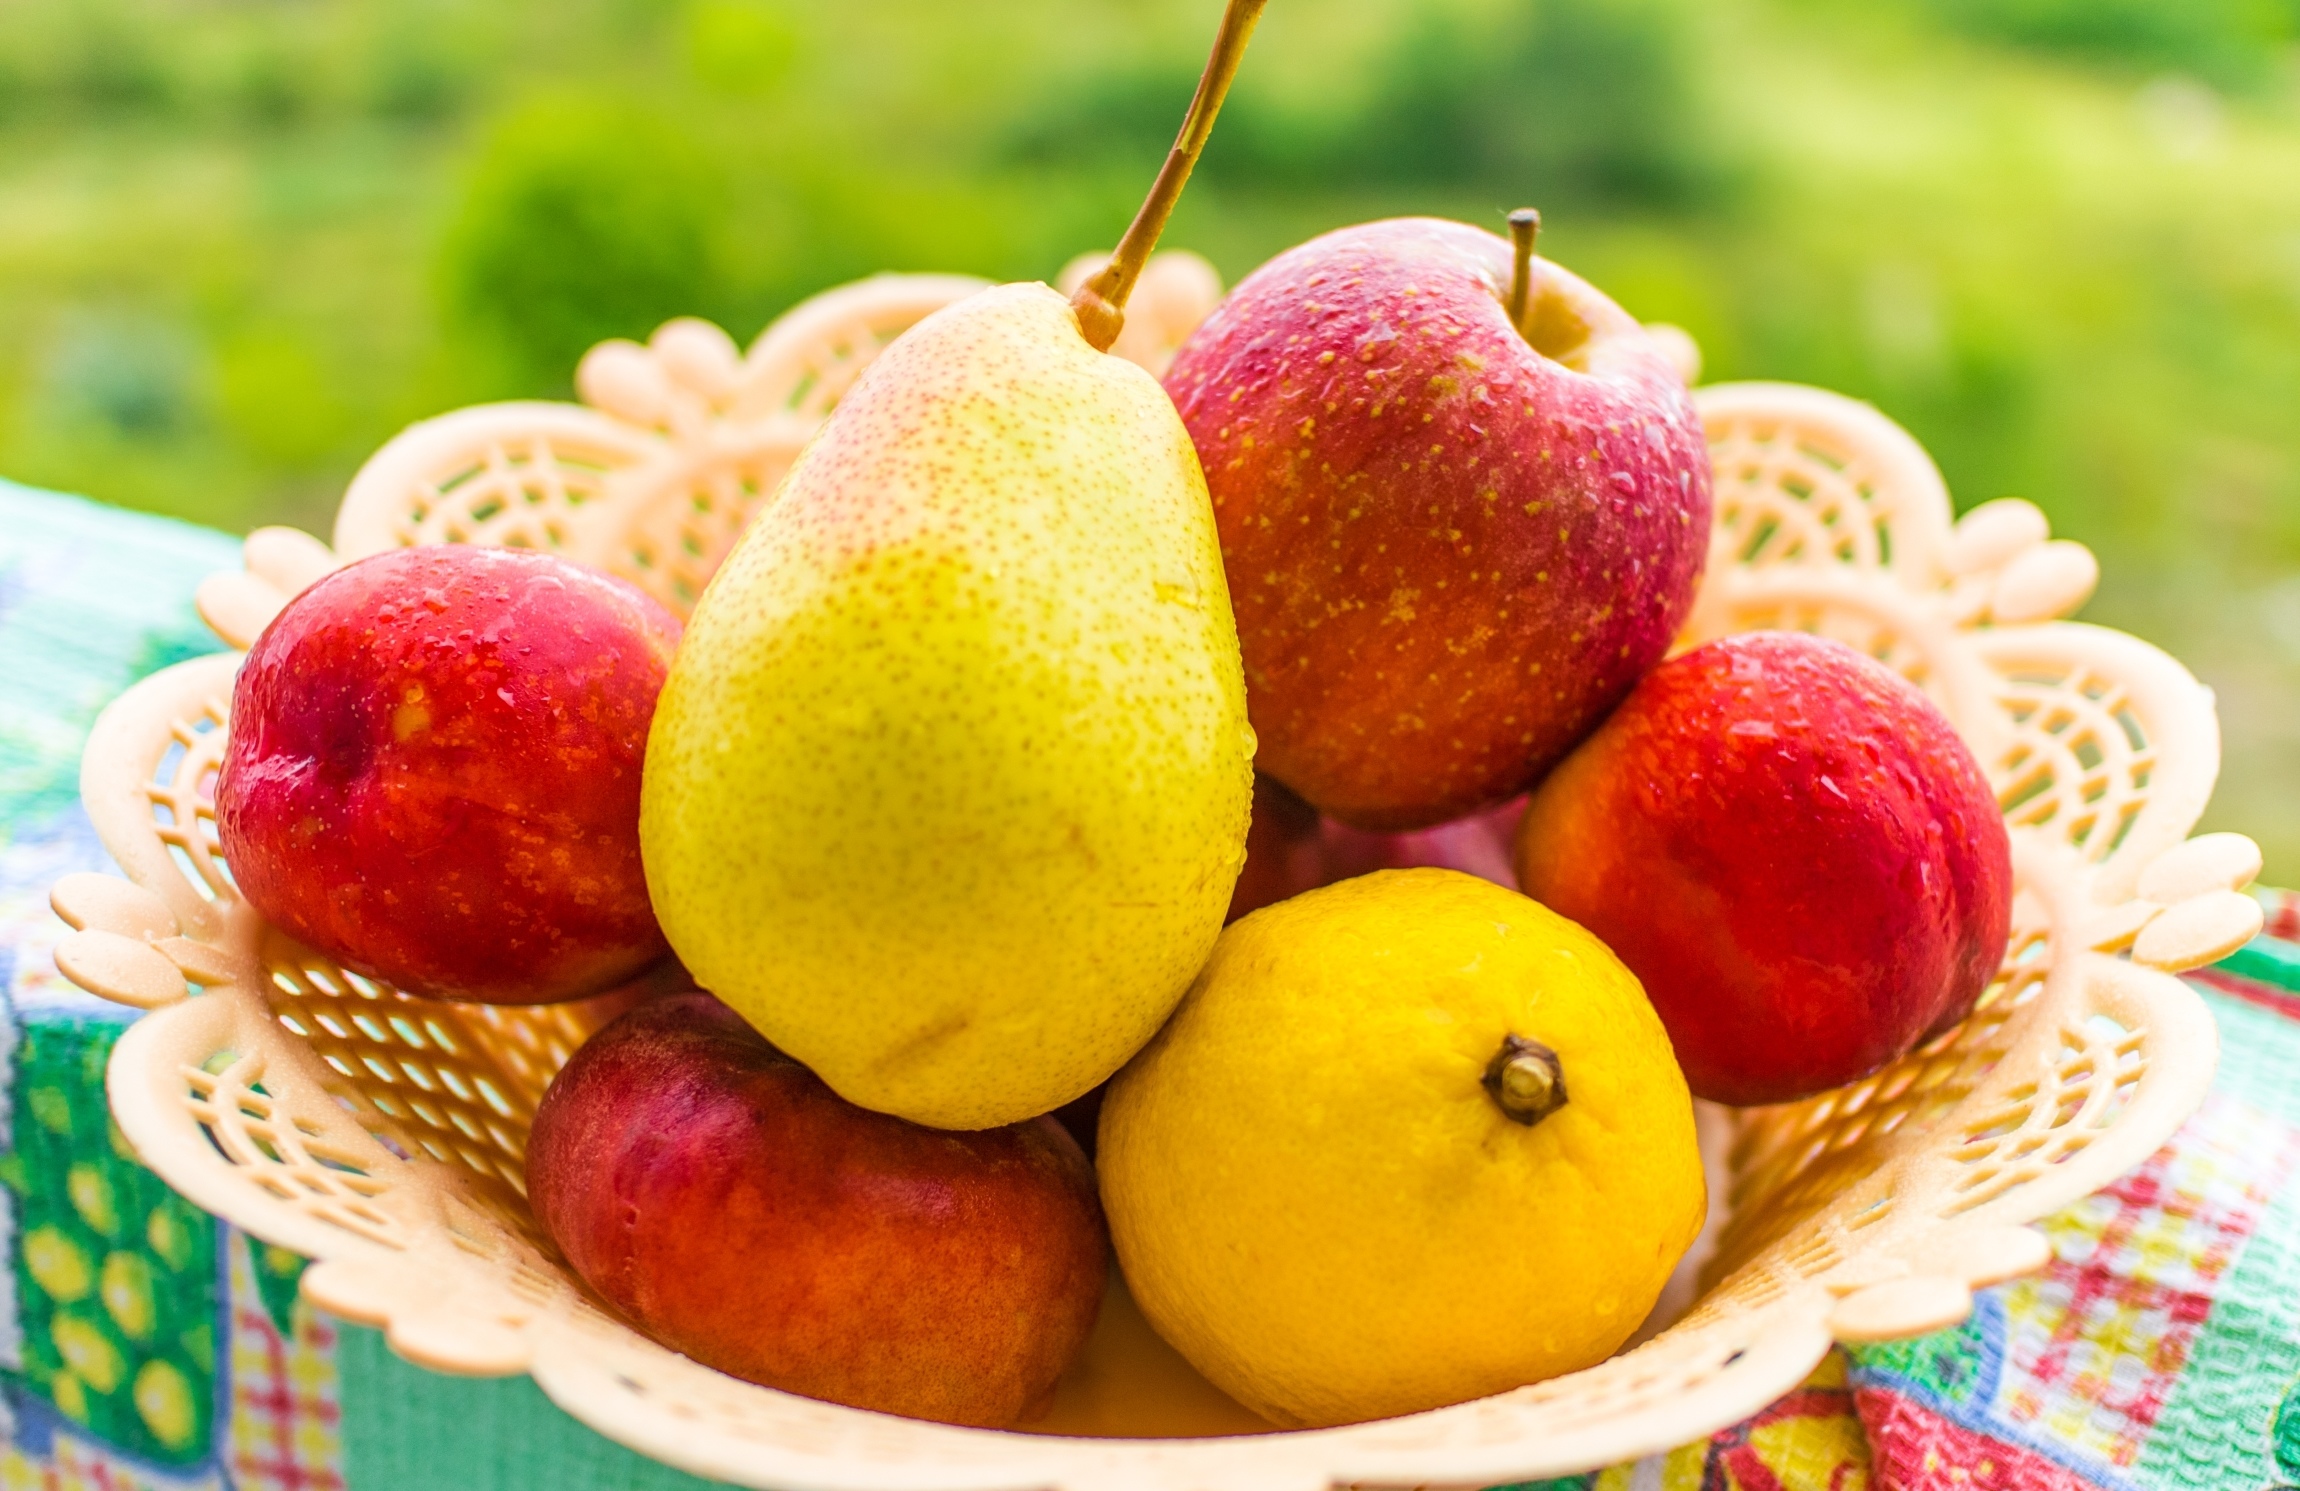 2 11 всех фруктов составляют персики. Фрукты. Летние фрукты. Красивые фрукты. Фрукты яблоки груши.